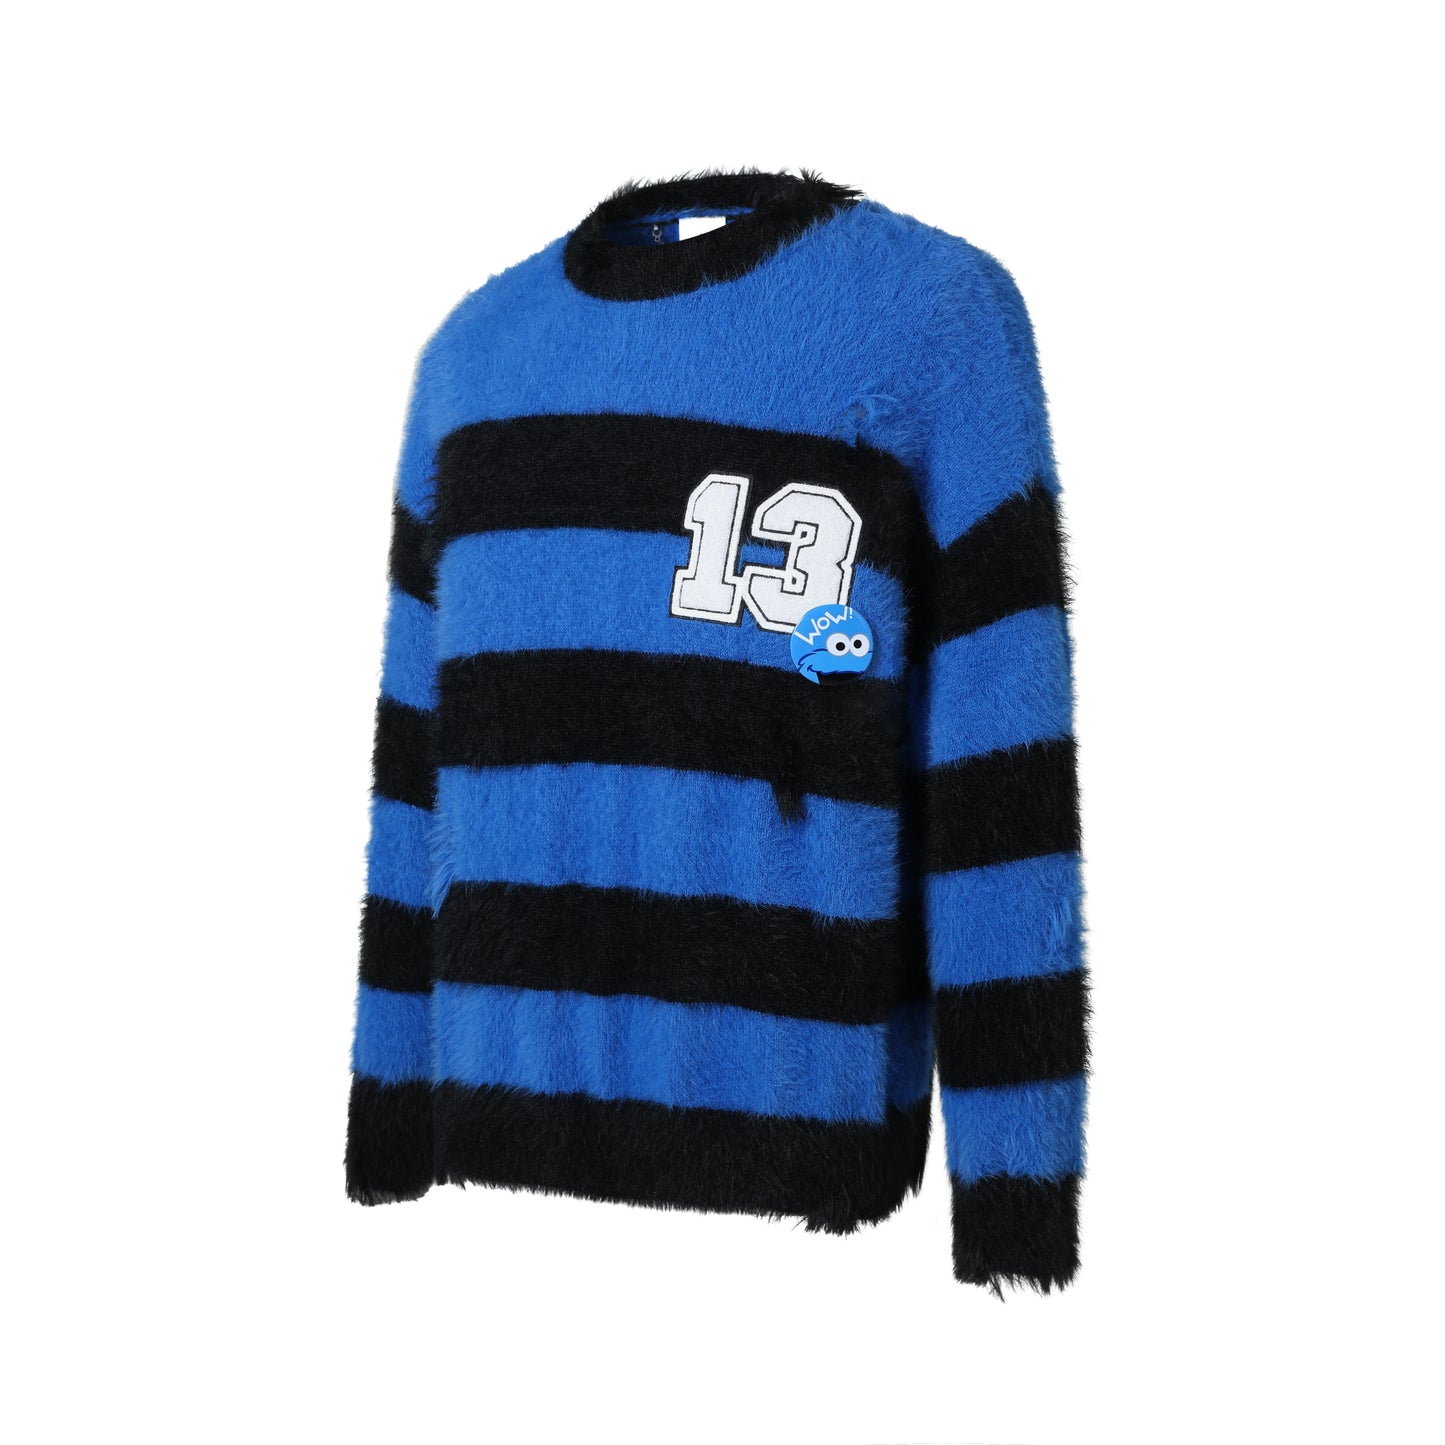 13DE MARZO Elmo Bear Artificial Fur Stripe Sweater